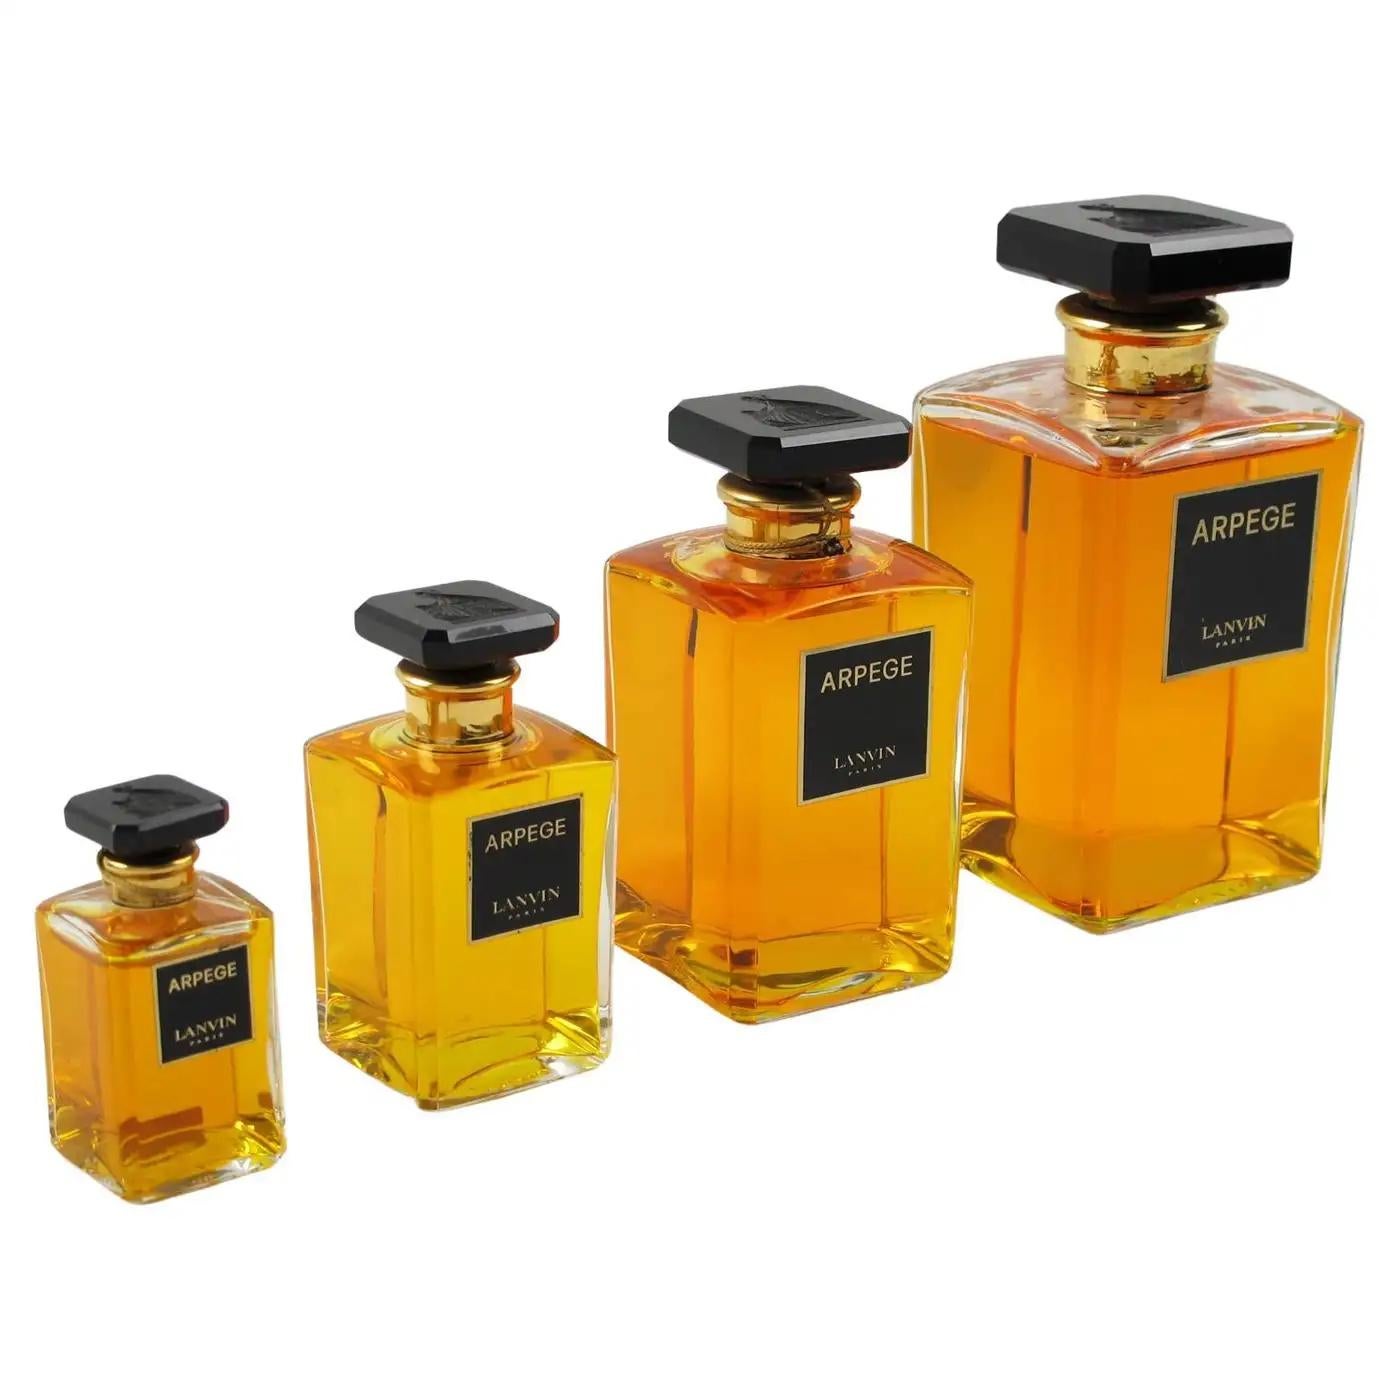 Flacon de parfum factice en cristal Lanvin Arpege Store Display, 4 pièces en vente 1